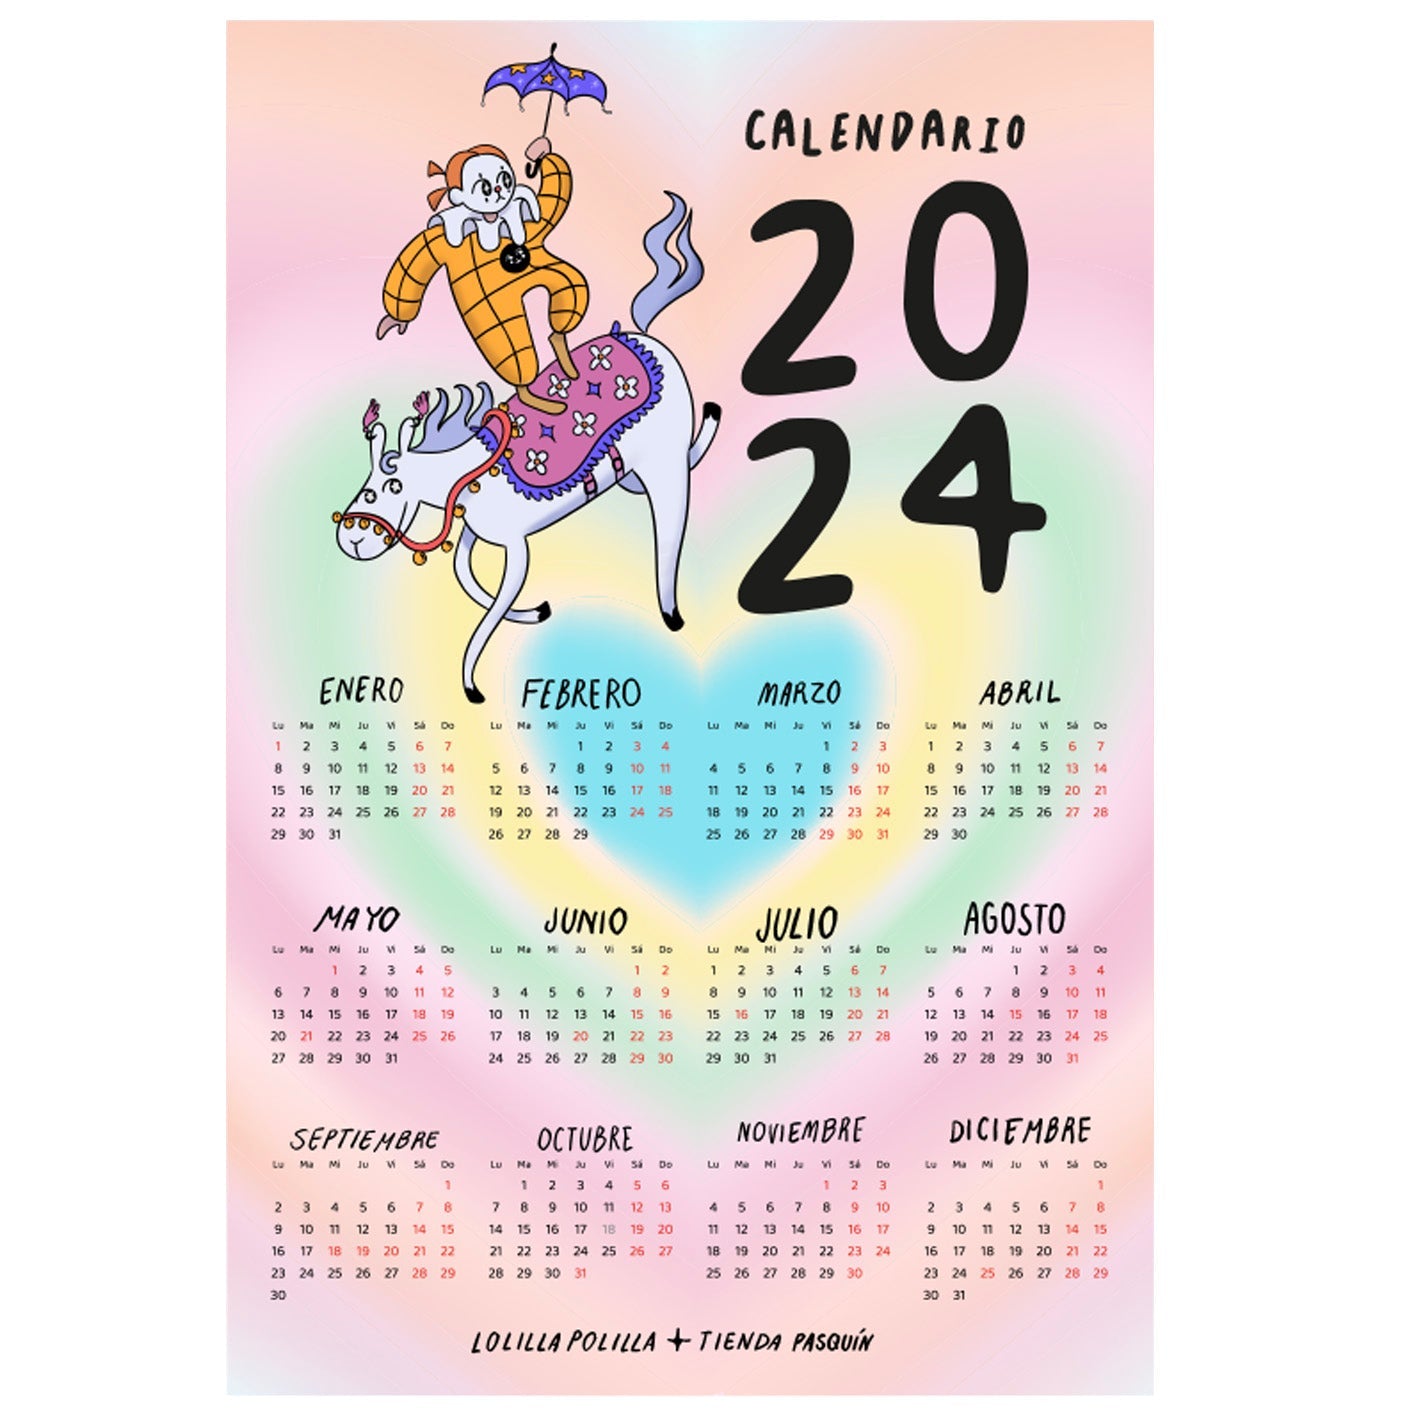 Pasquín calendario 2024 adhesivo y reposicionable + Opción Set Digital - Tienda Pasquín